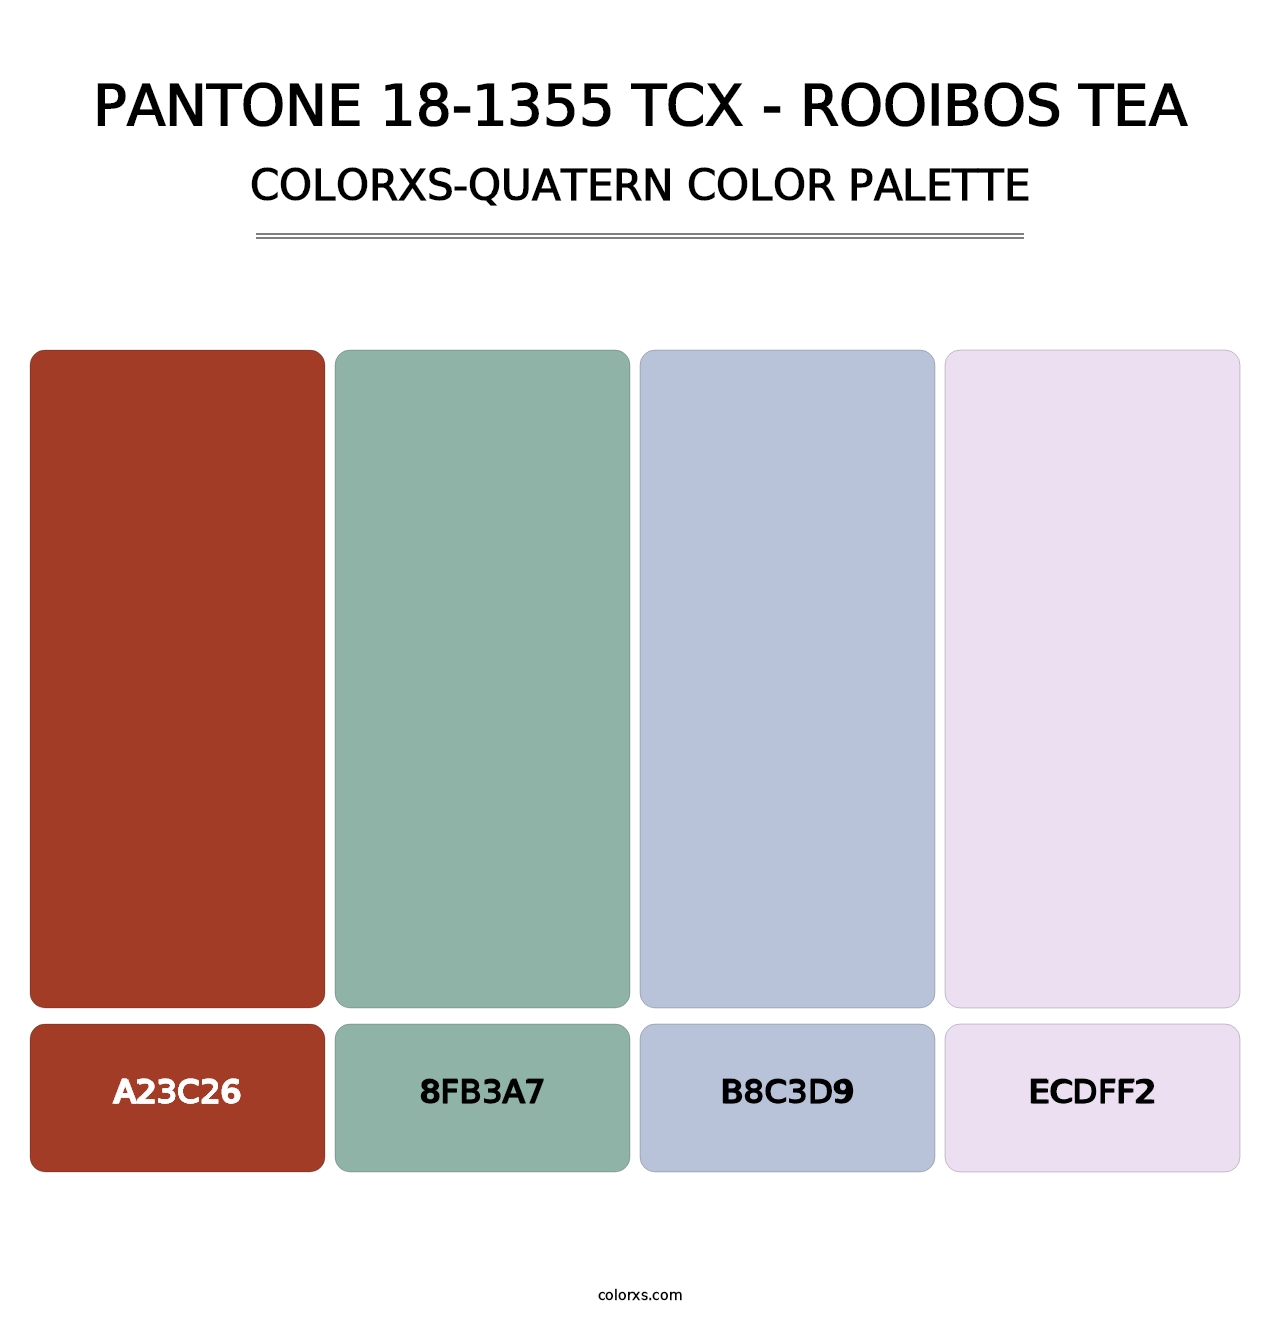 PANTONE 18-1355 TCX - Rooibos Tea - Colorxs Quatern Palette